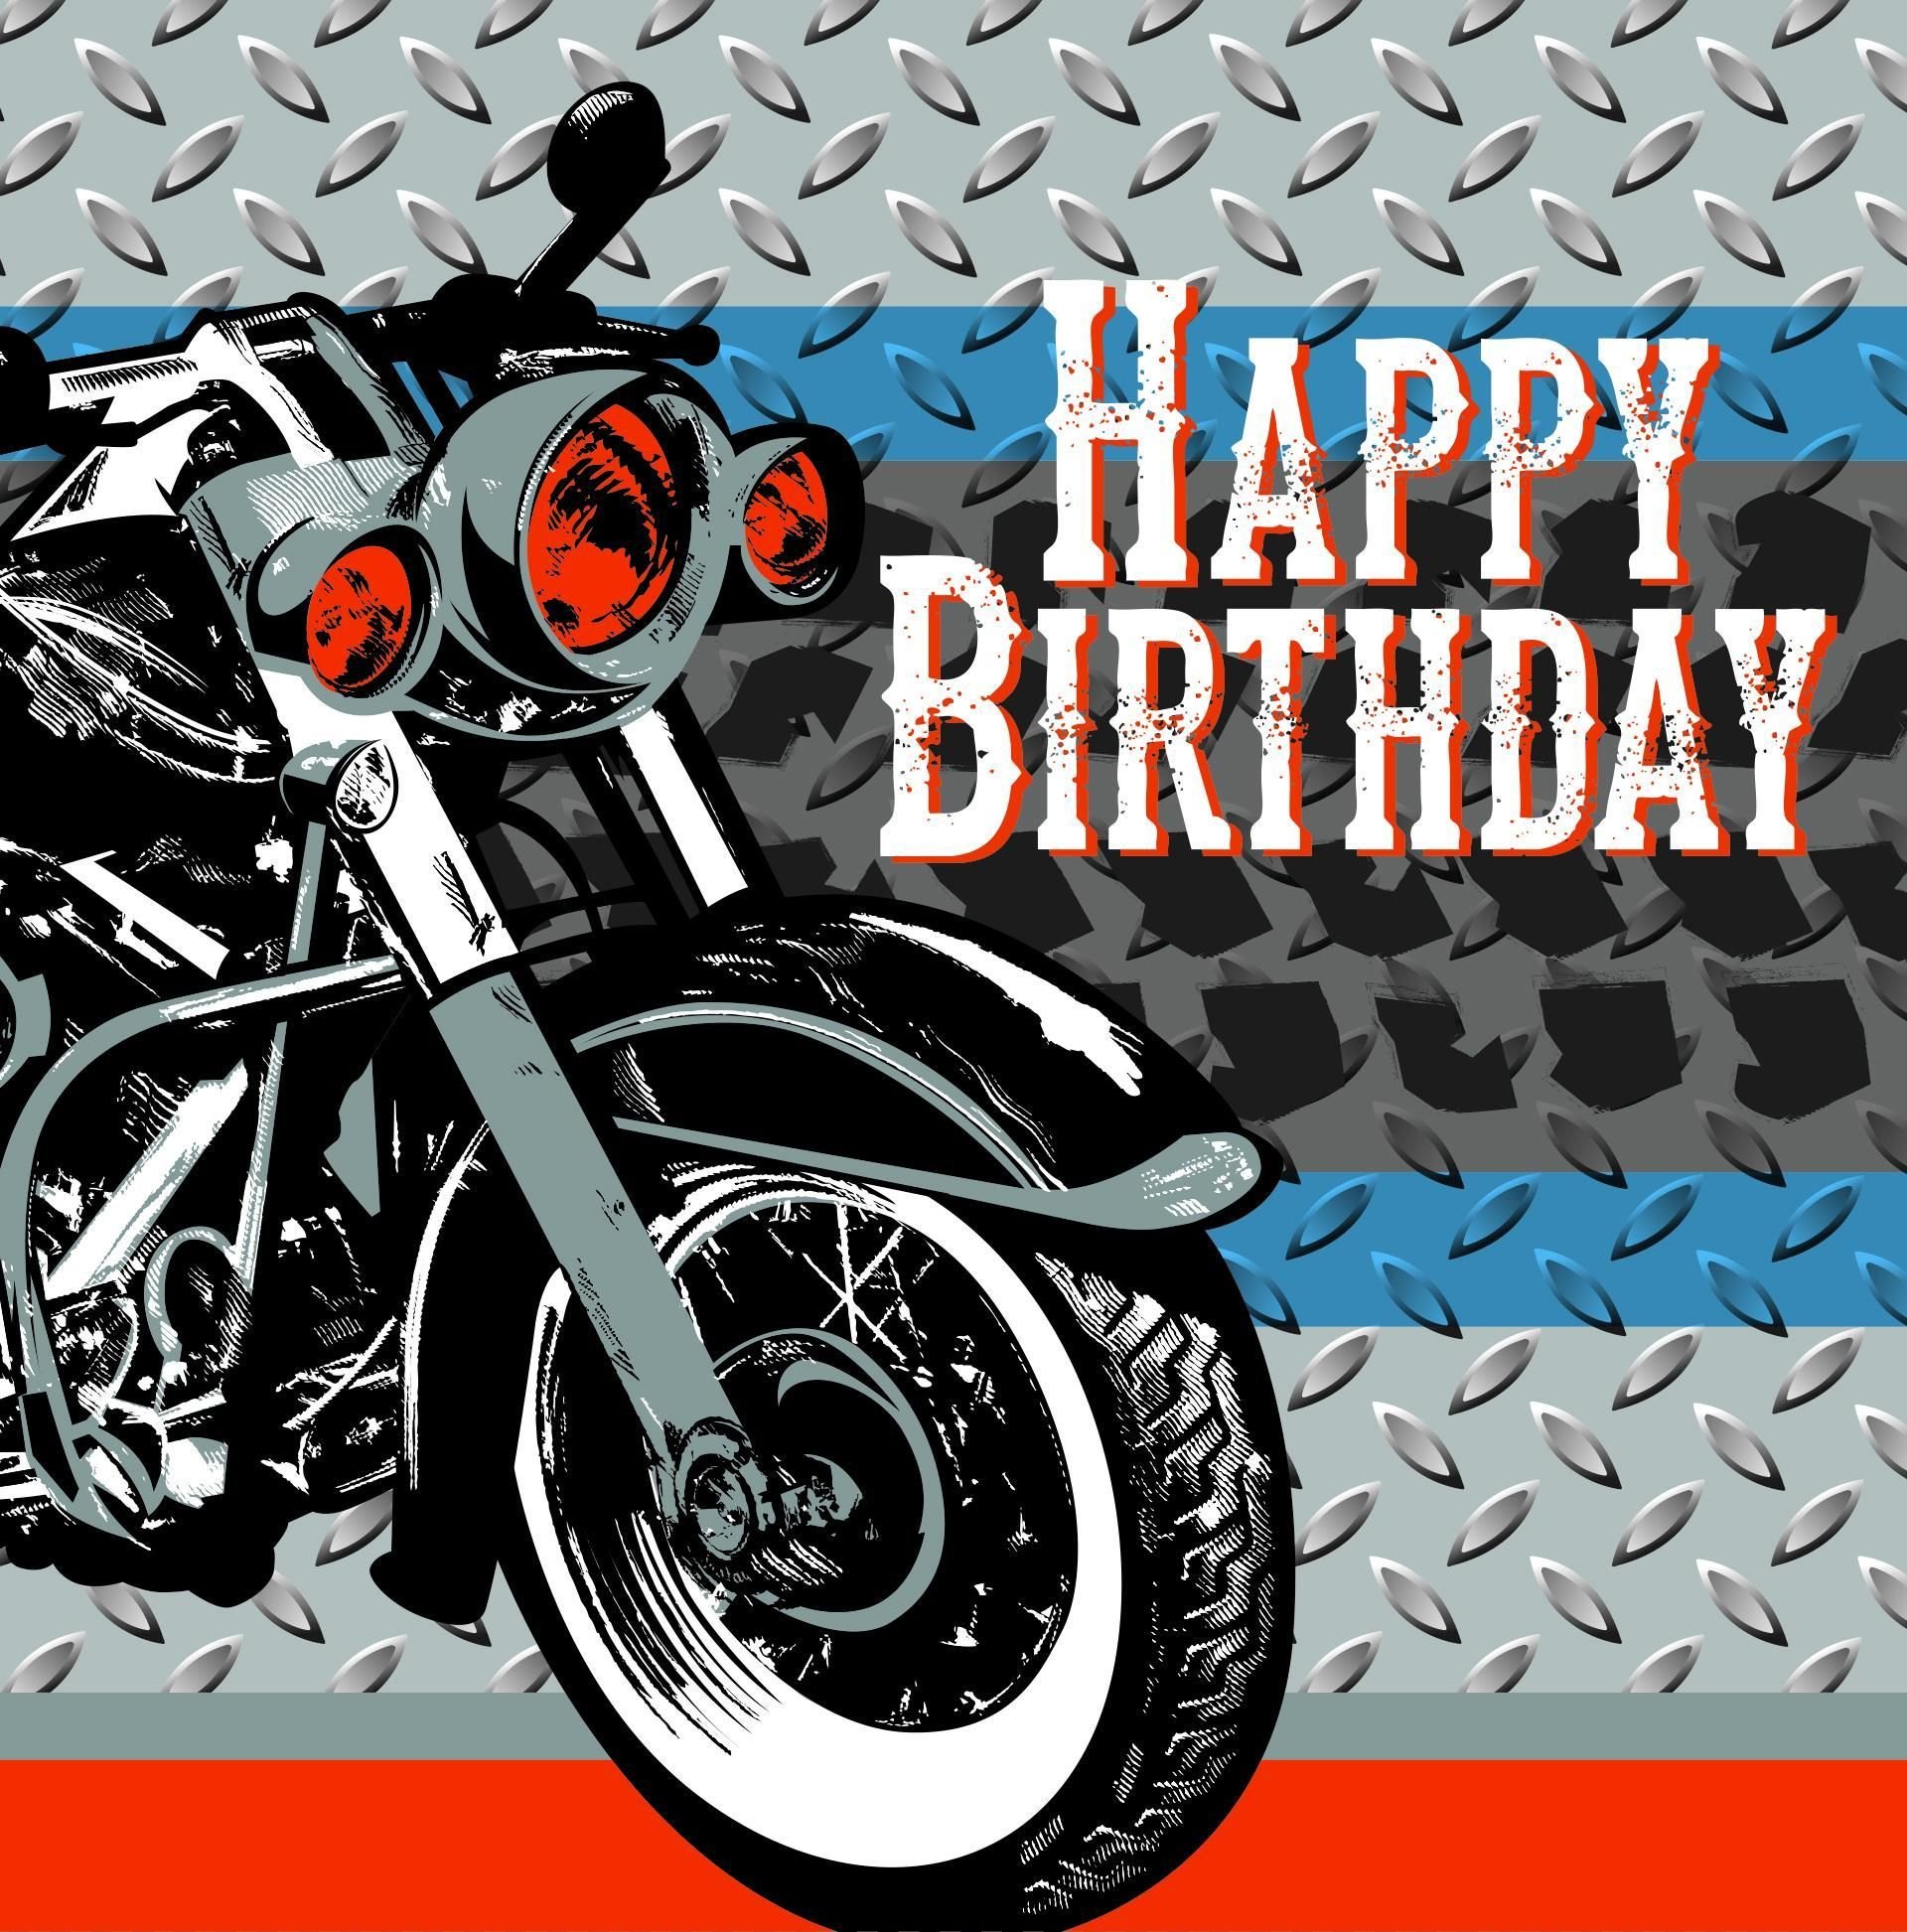 С днем рождения мужчине с мотоциклом